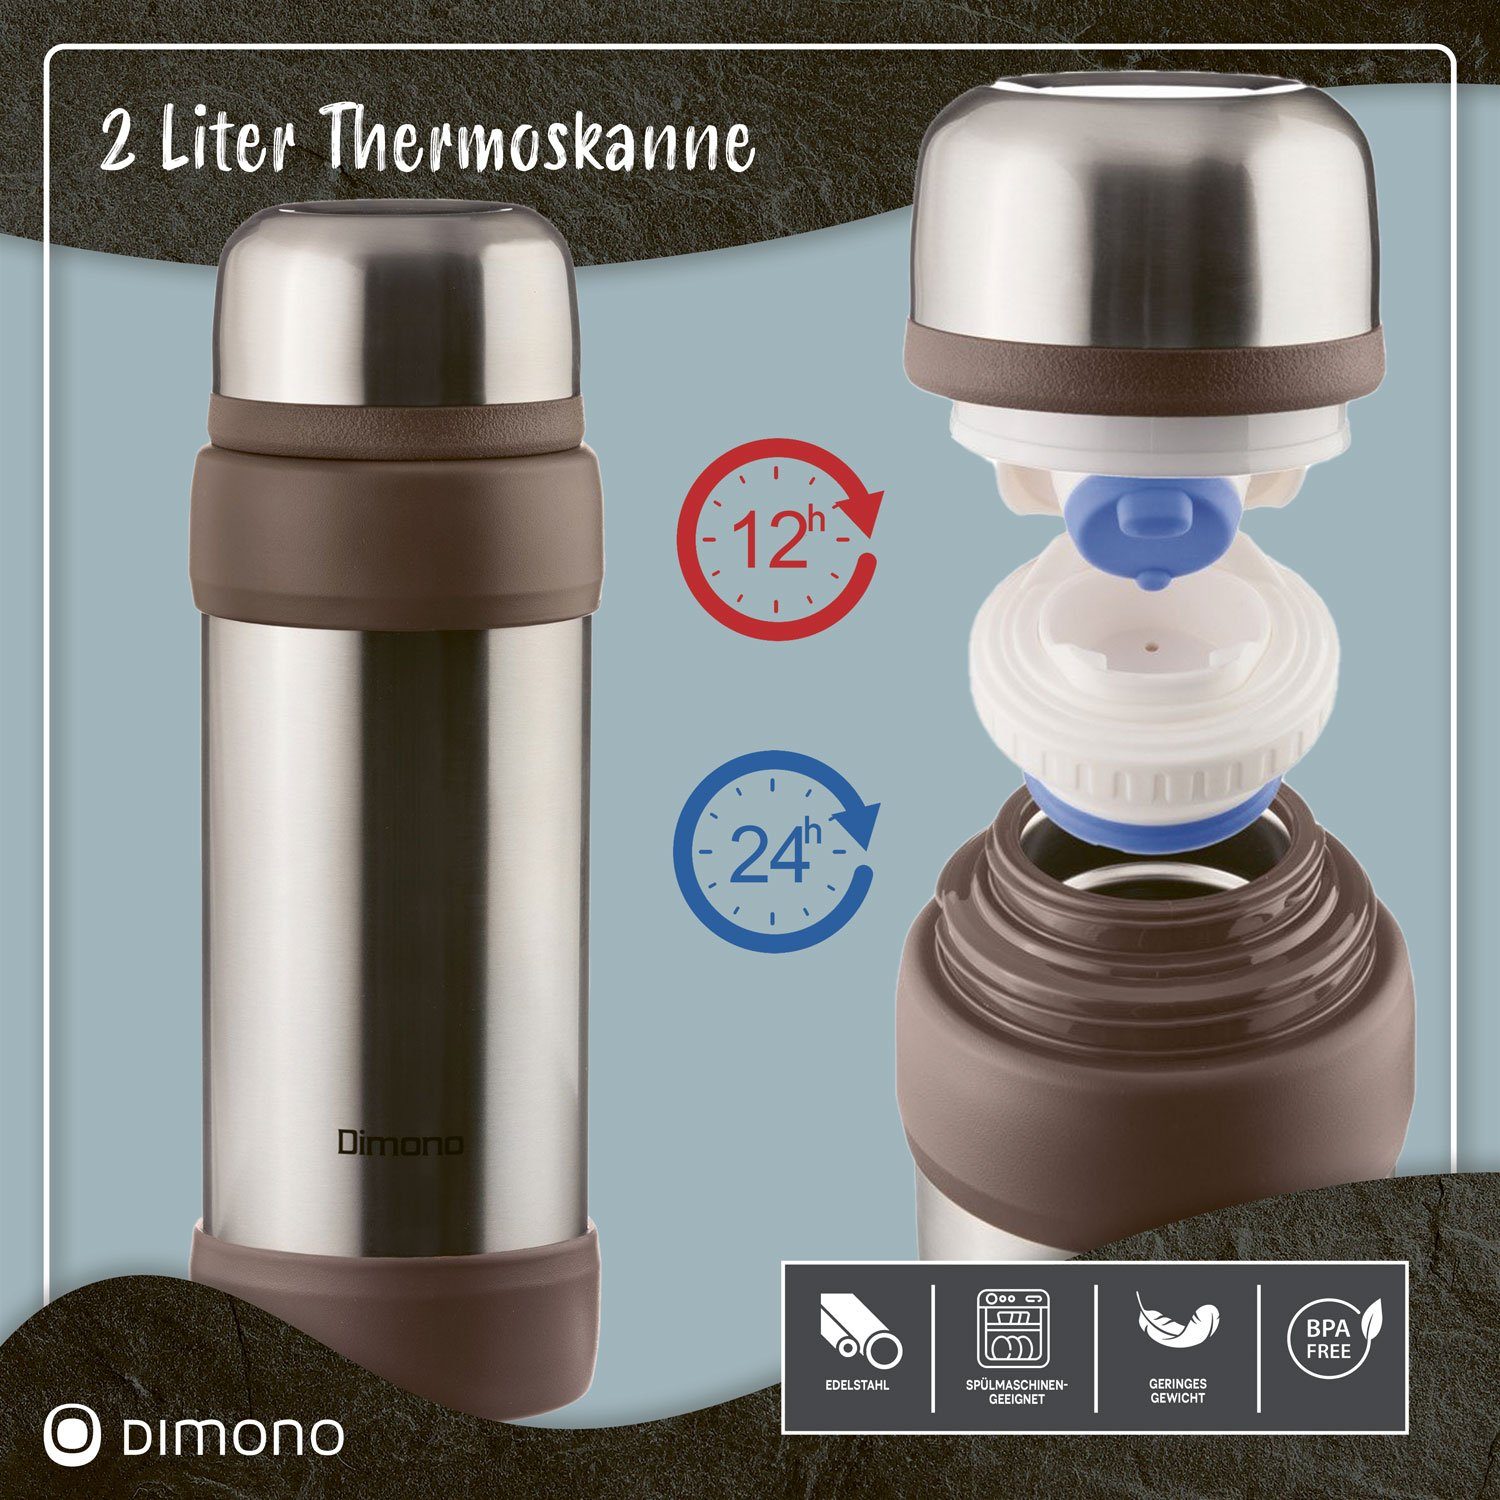 Isolierkanne Liter 2 Thermoskanne Edelstahl Pur XXL, Isolierflasche Vakuum Dimono Thermoflasche